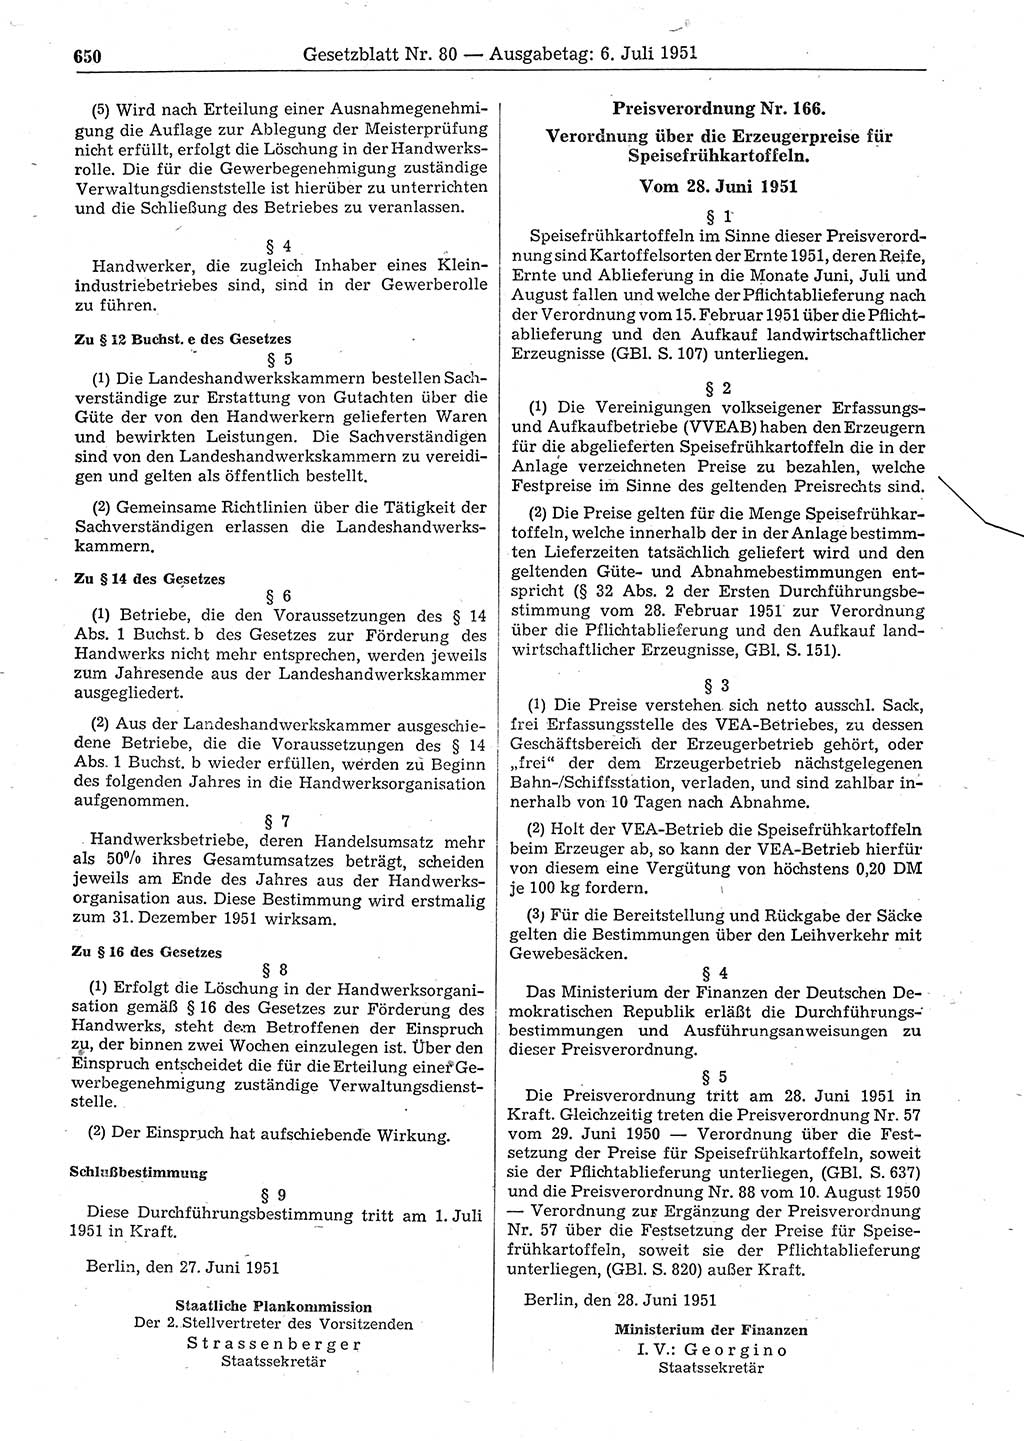 Gesetzblatt (GBl.) der Deutschen Demokratischen Republik (DDR) 1951, Seite 650 (GBl. DDR 1951, S. 650)